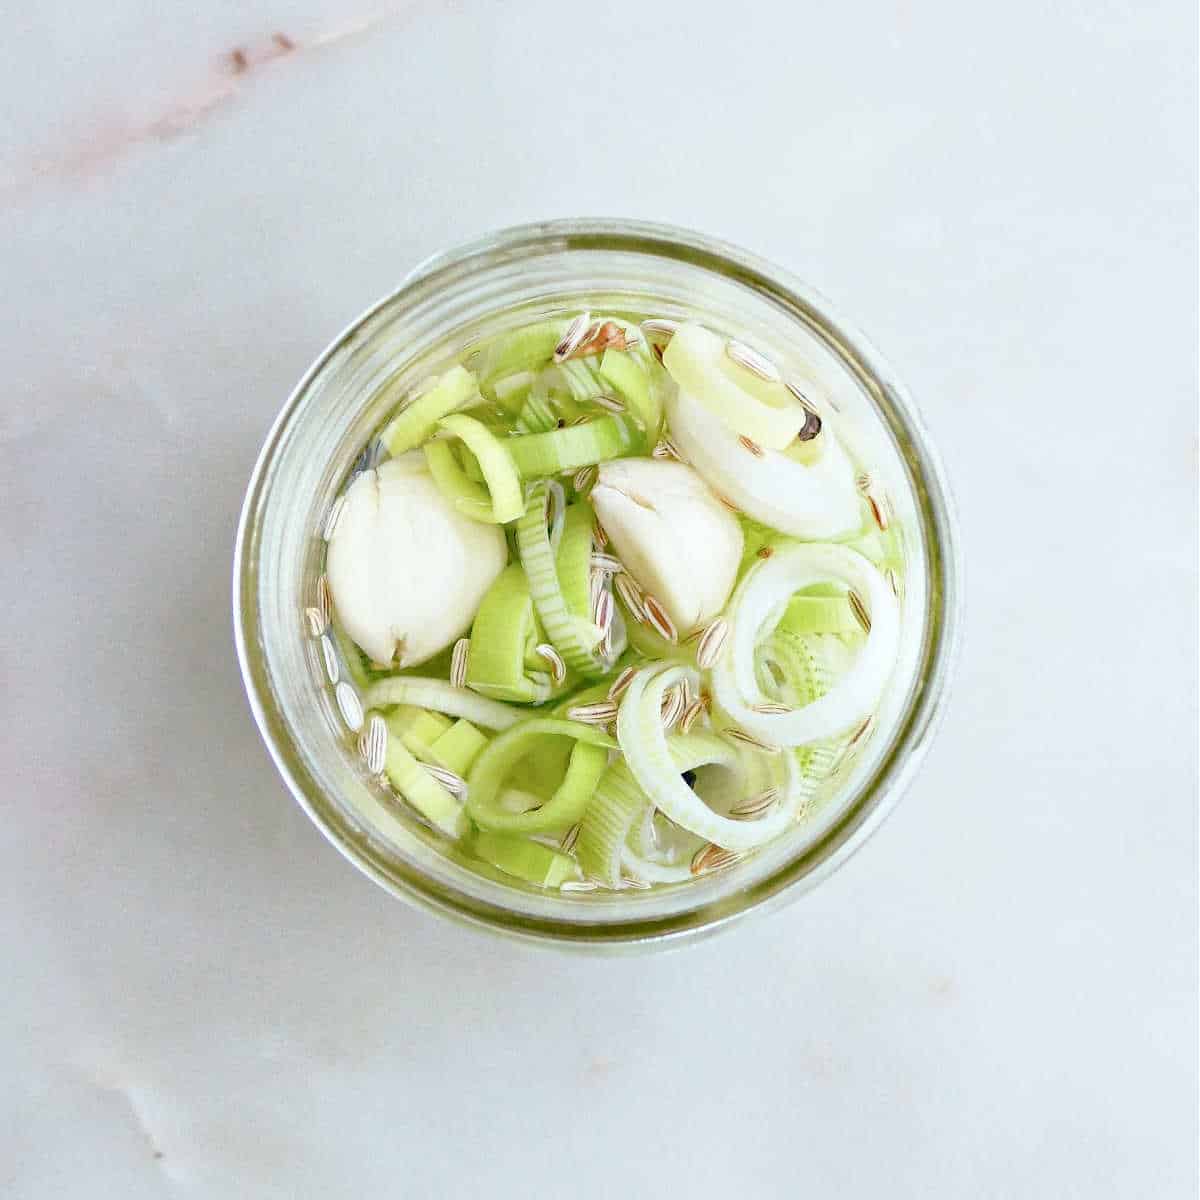 pickled leeks with seasonings in a jar before being put in the fridge